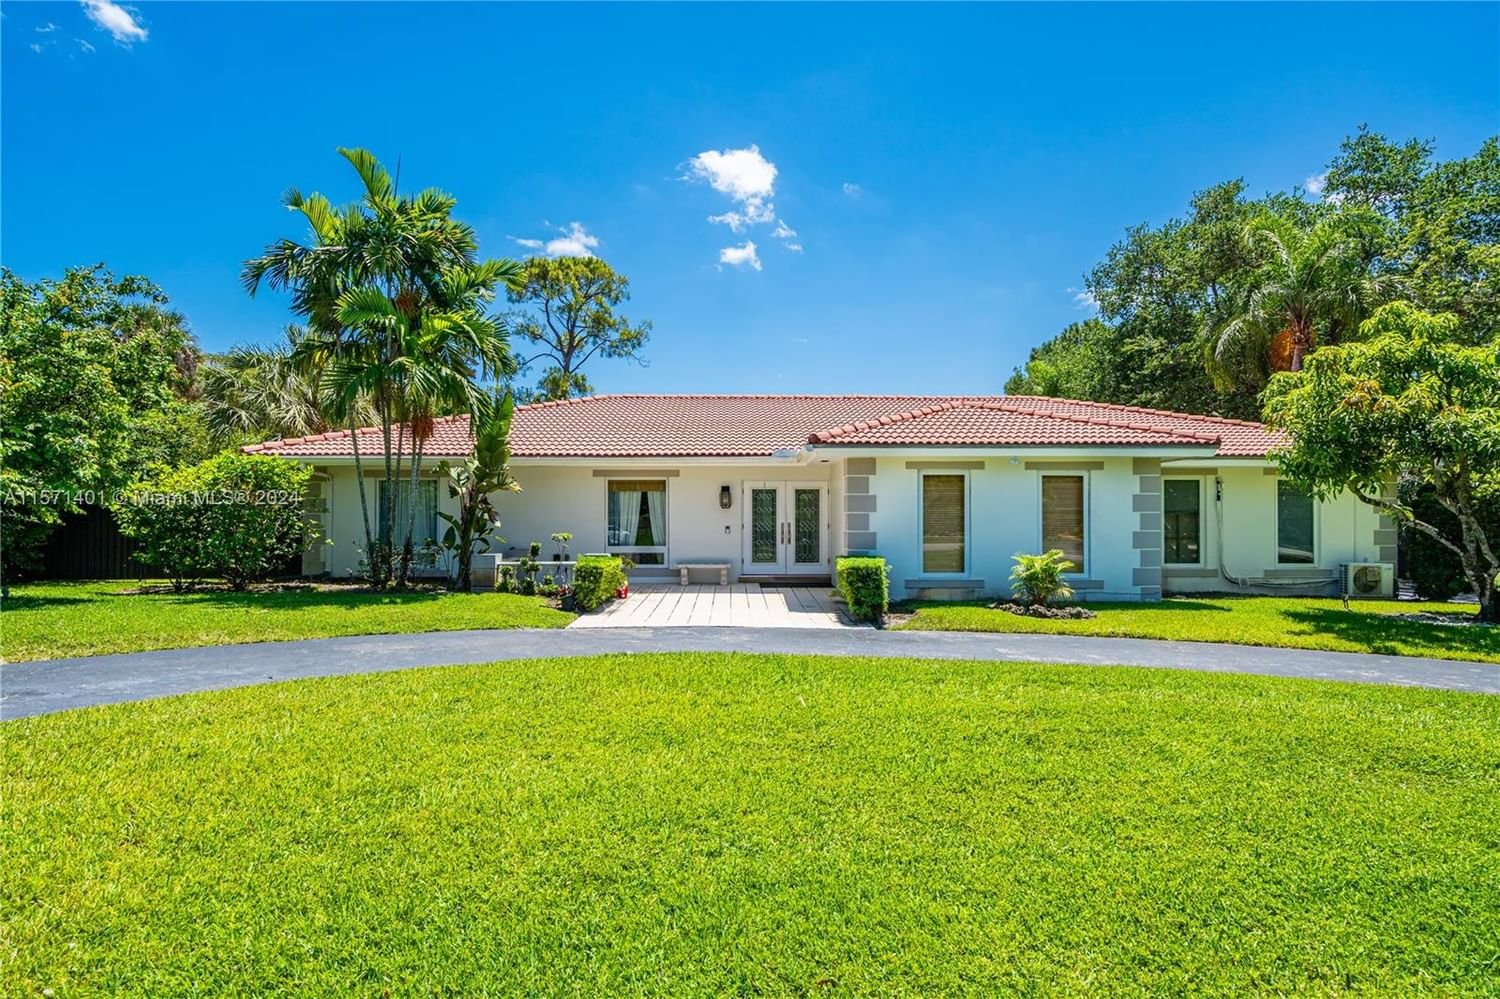 Real estate property located at 9470 97th St, Miami-Dade County, GRANADA GARDENS, Miami, FL